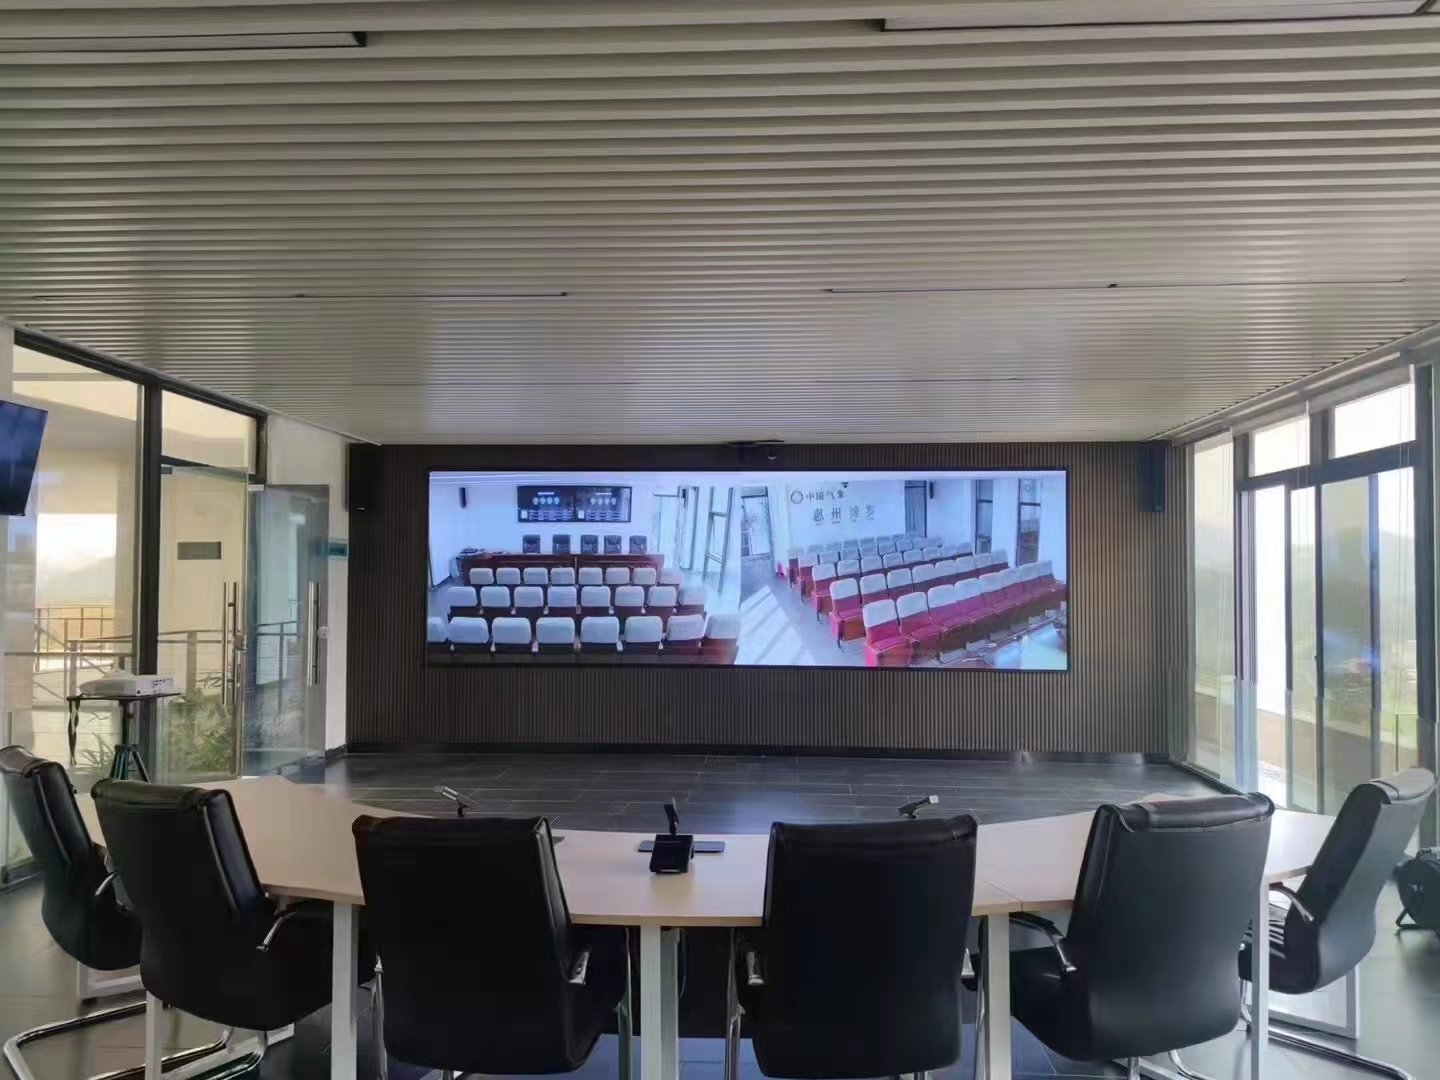 Conception du système de conférence pour la salle multifonctionnelle de l'immeuble de bureaux